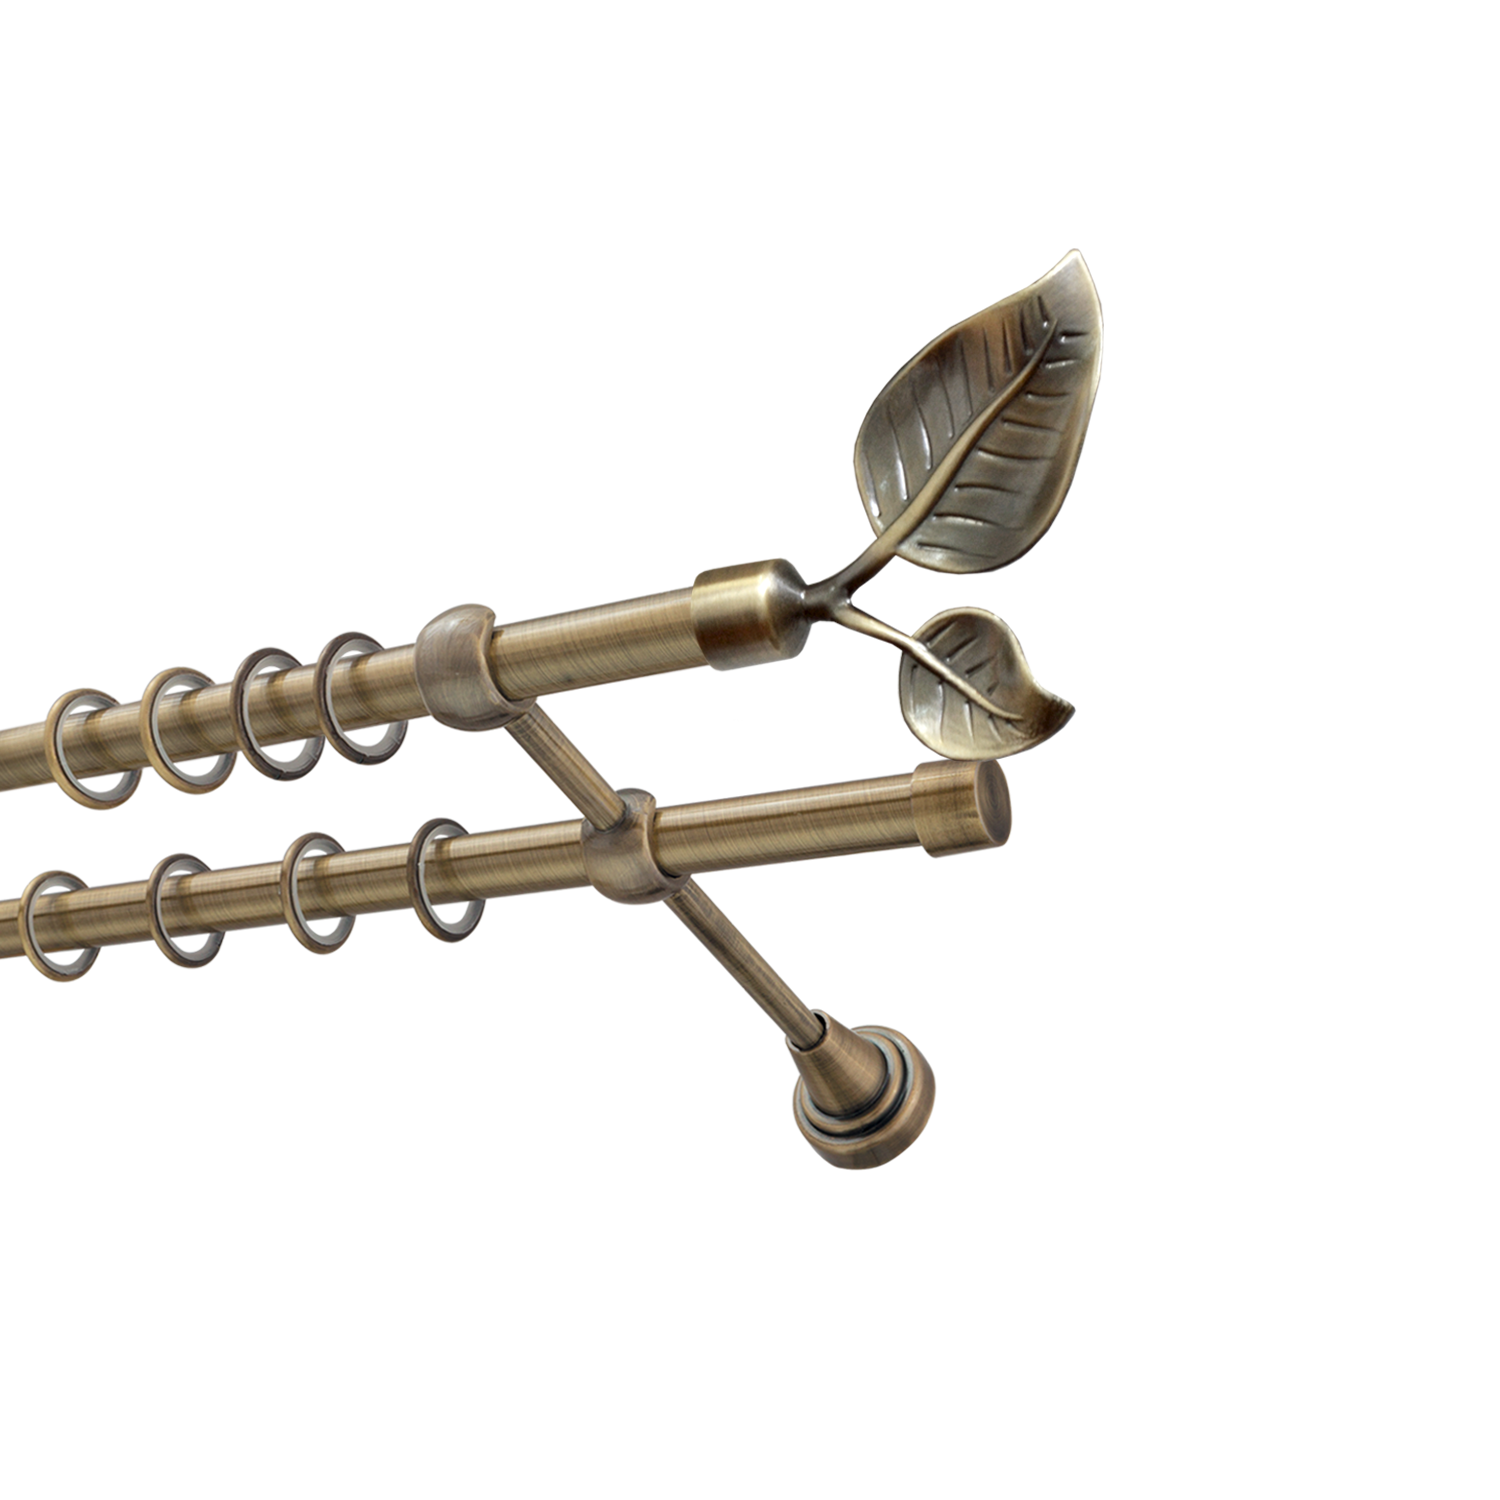 Металлический карниз для штор Тропик, двухрядный 16/16 мм, бронза, гладкая штанга, длина 180 см - фото Wikidecor.ru